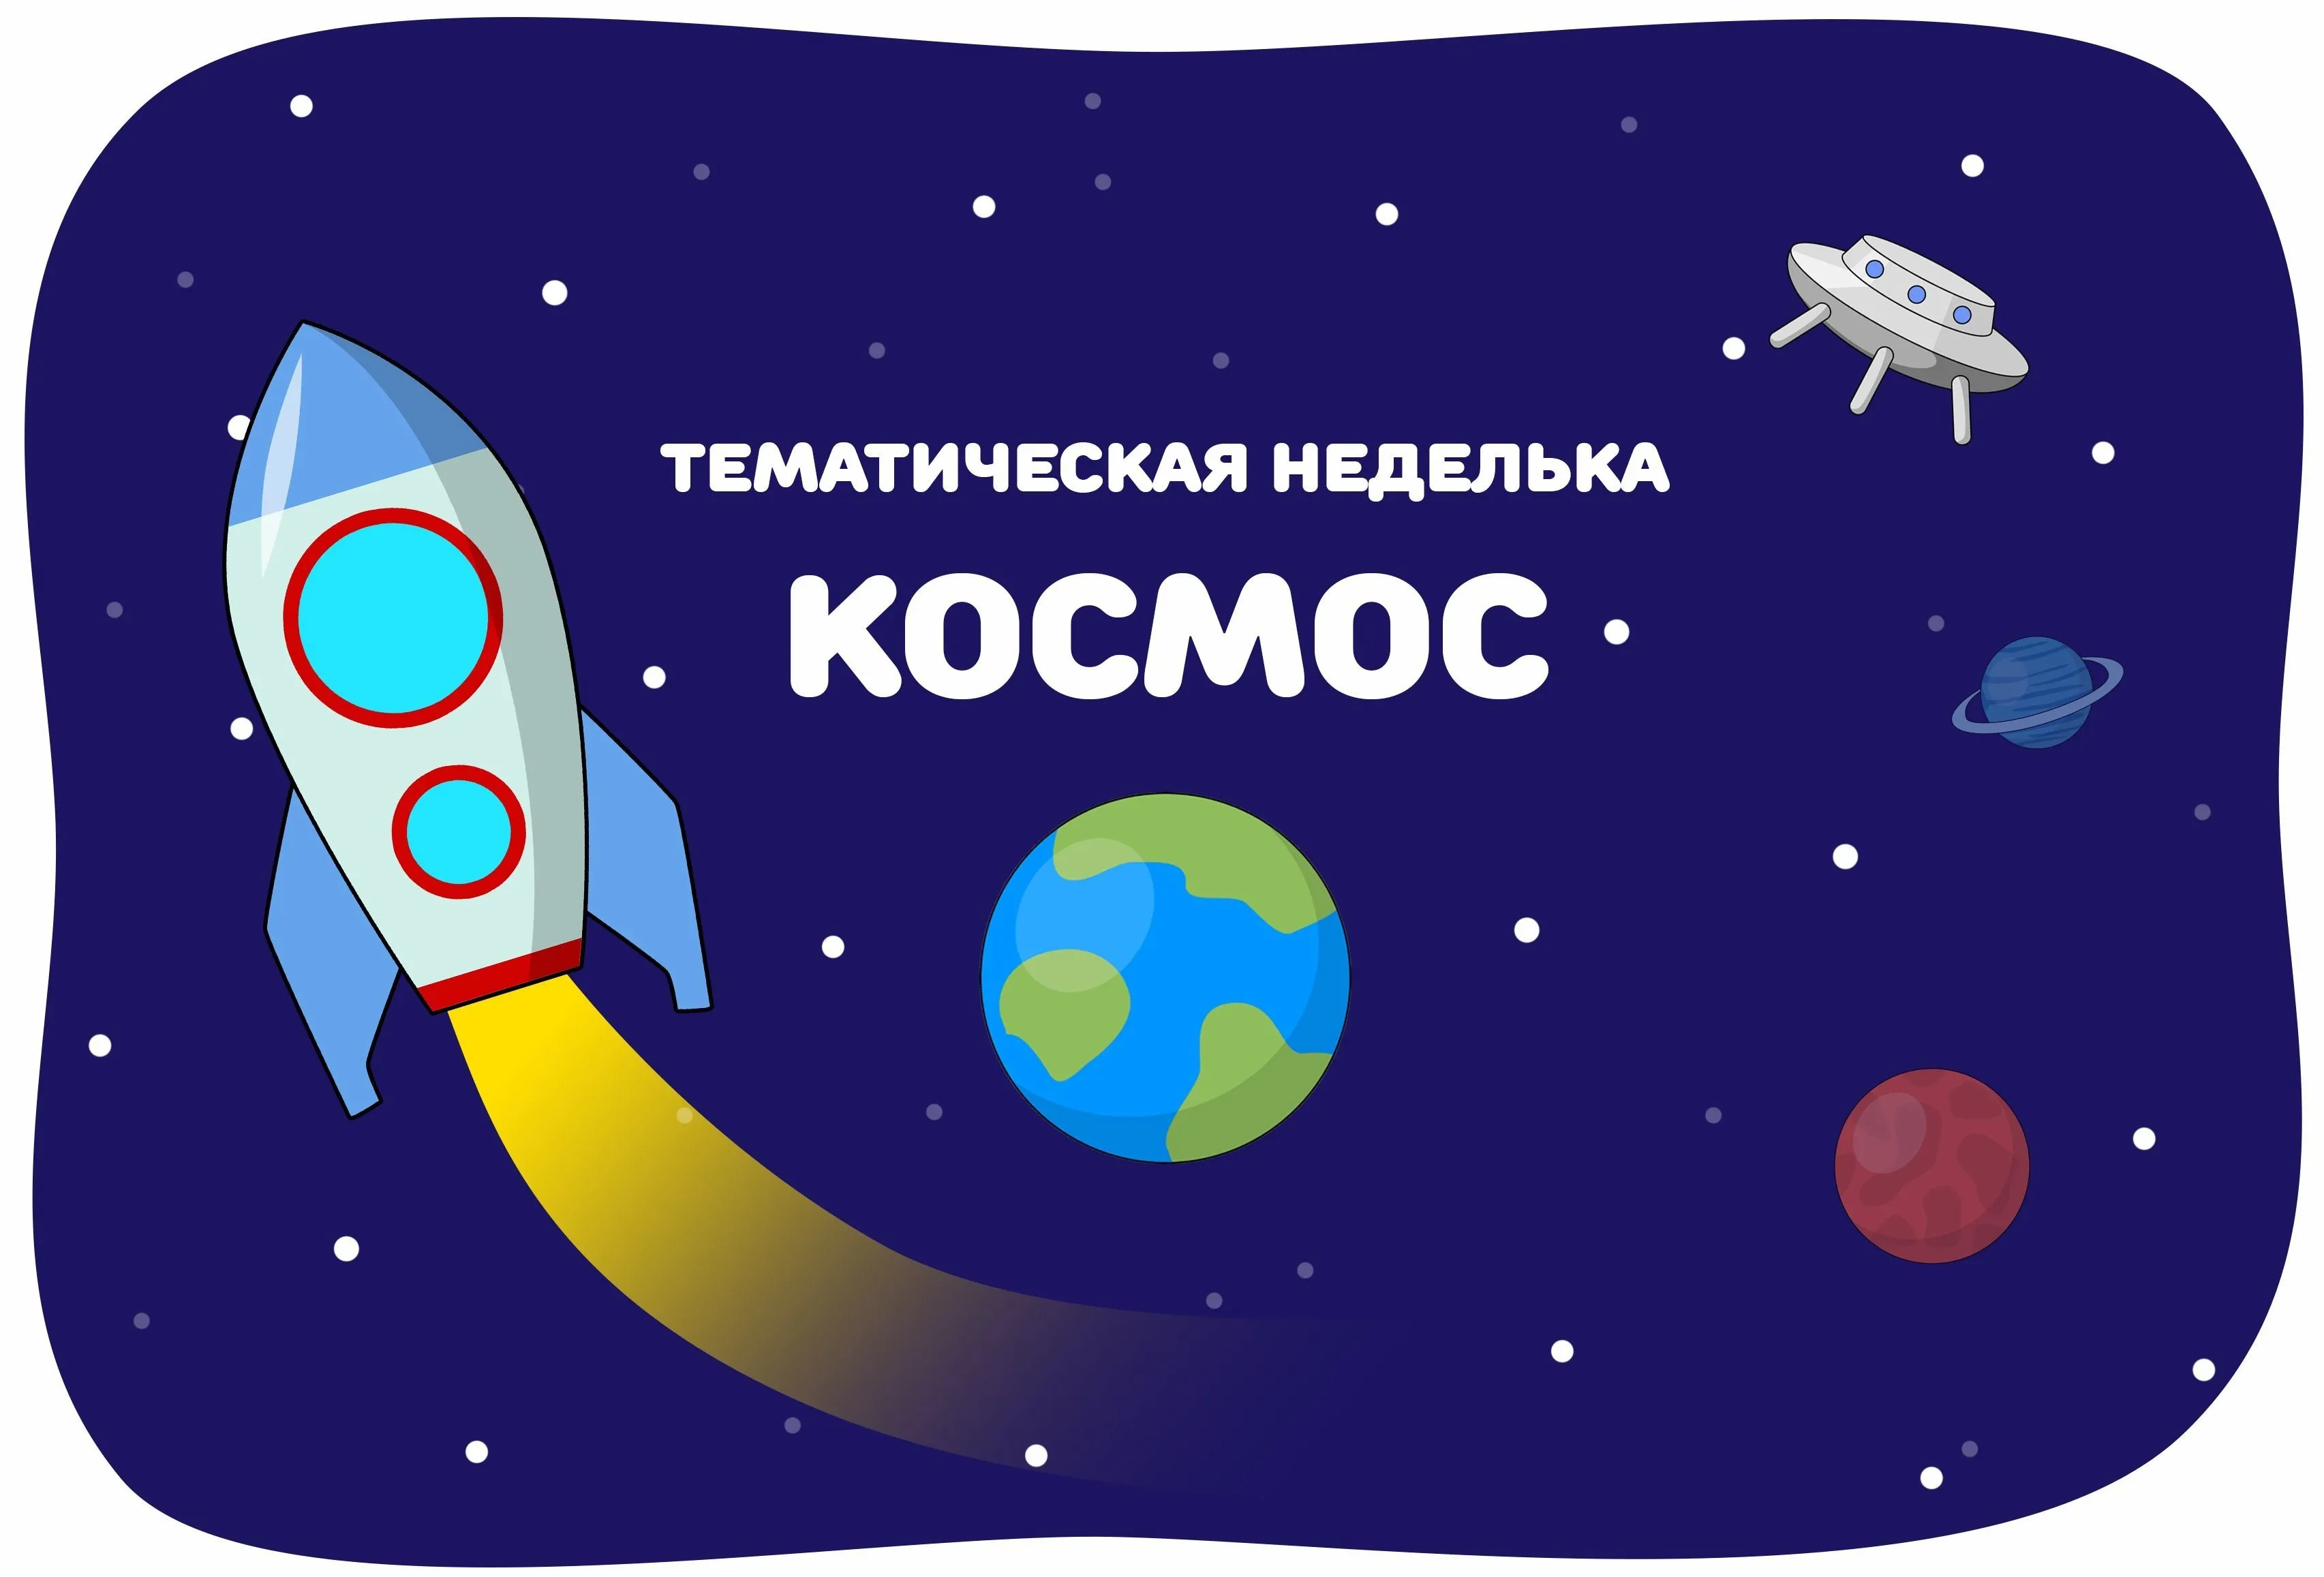 Картинка день космонавтики для дошкольников. Тема недели космос. Тема космос для детей. Косомсдля дошкольников. Тематическая неделя космос.